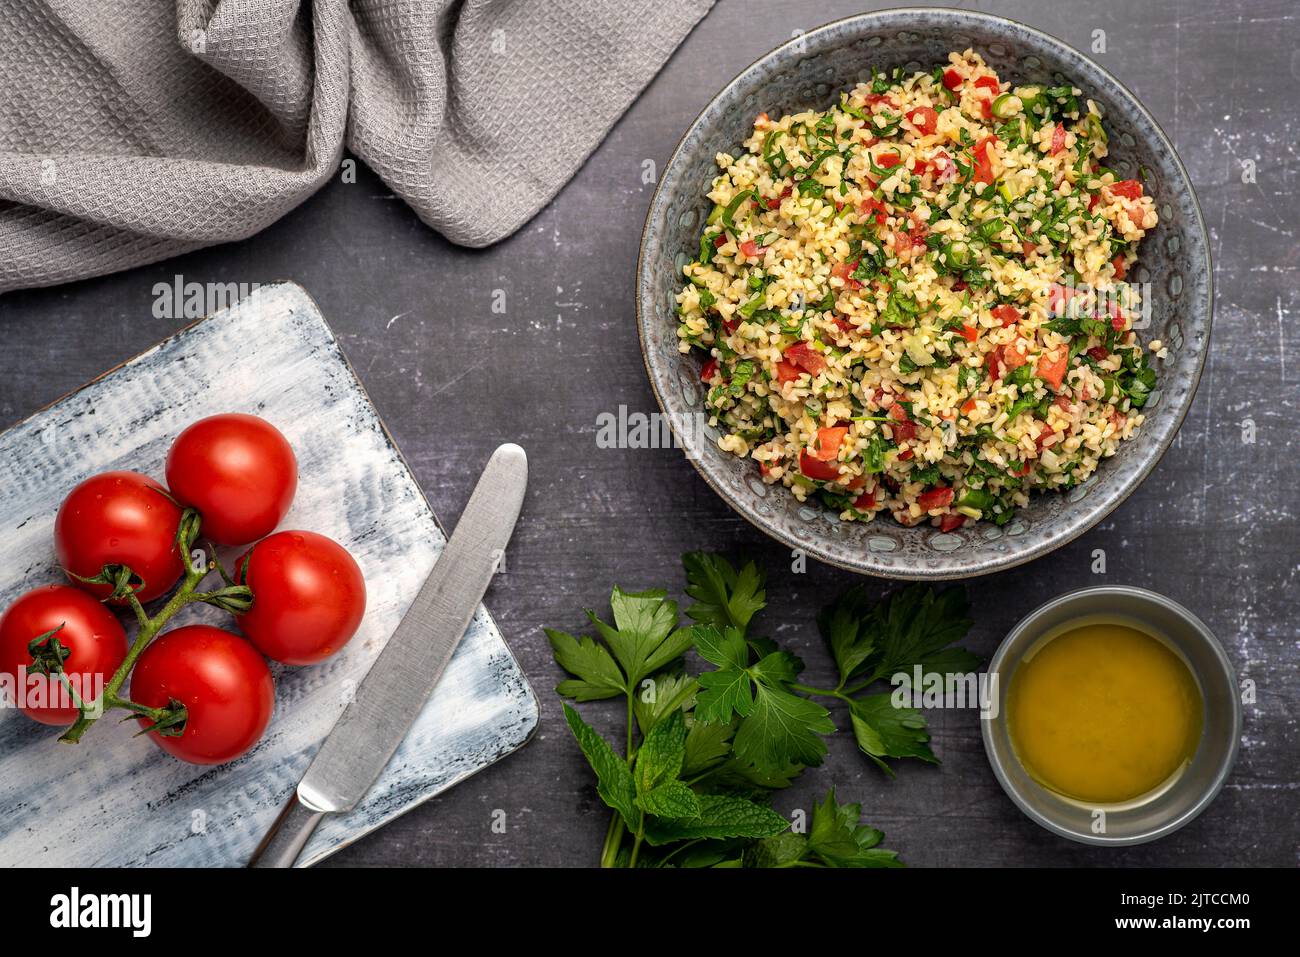 Fotografia alimentare di insalata tabouleh, bulgur, prezzemolo, menta, pomodoro Foto Stock